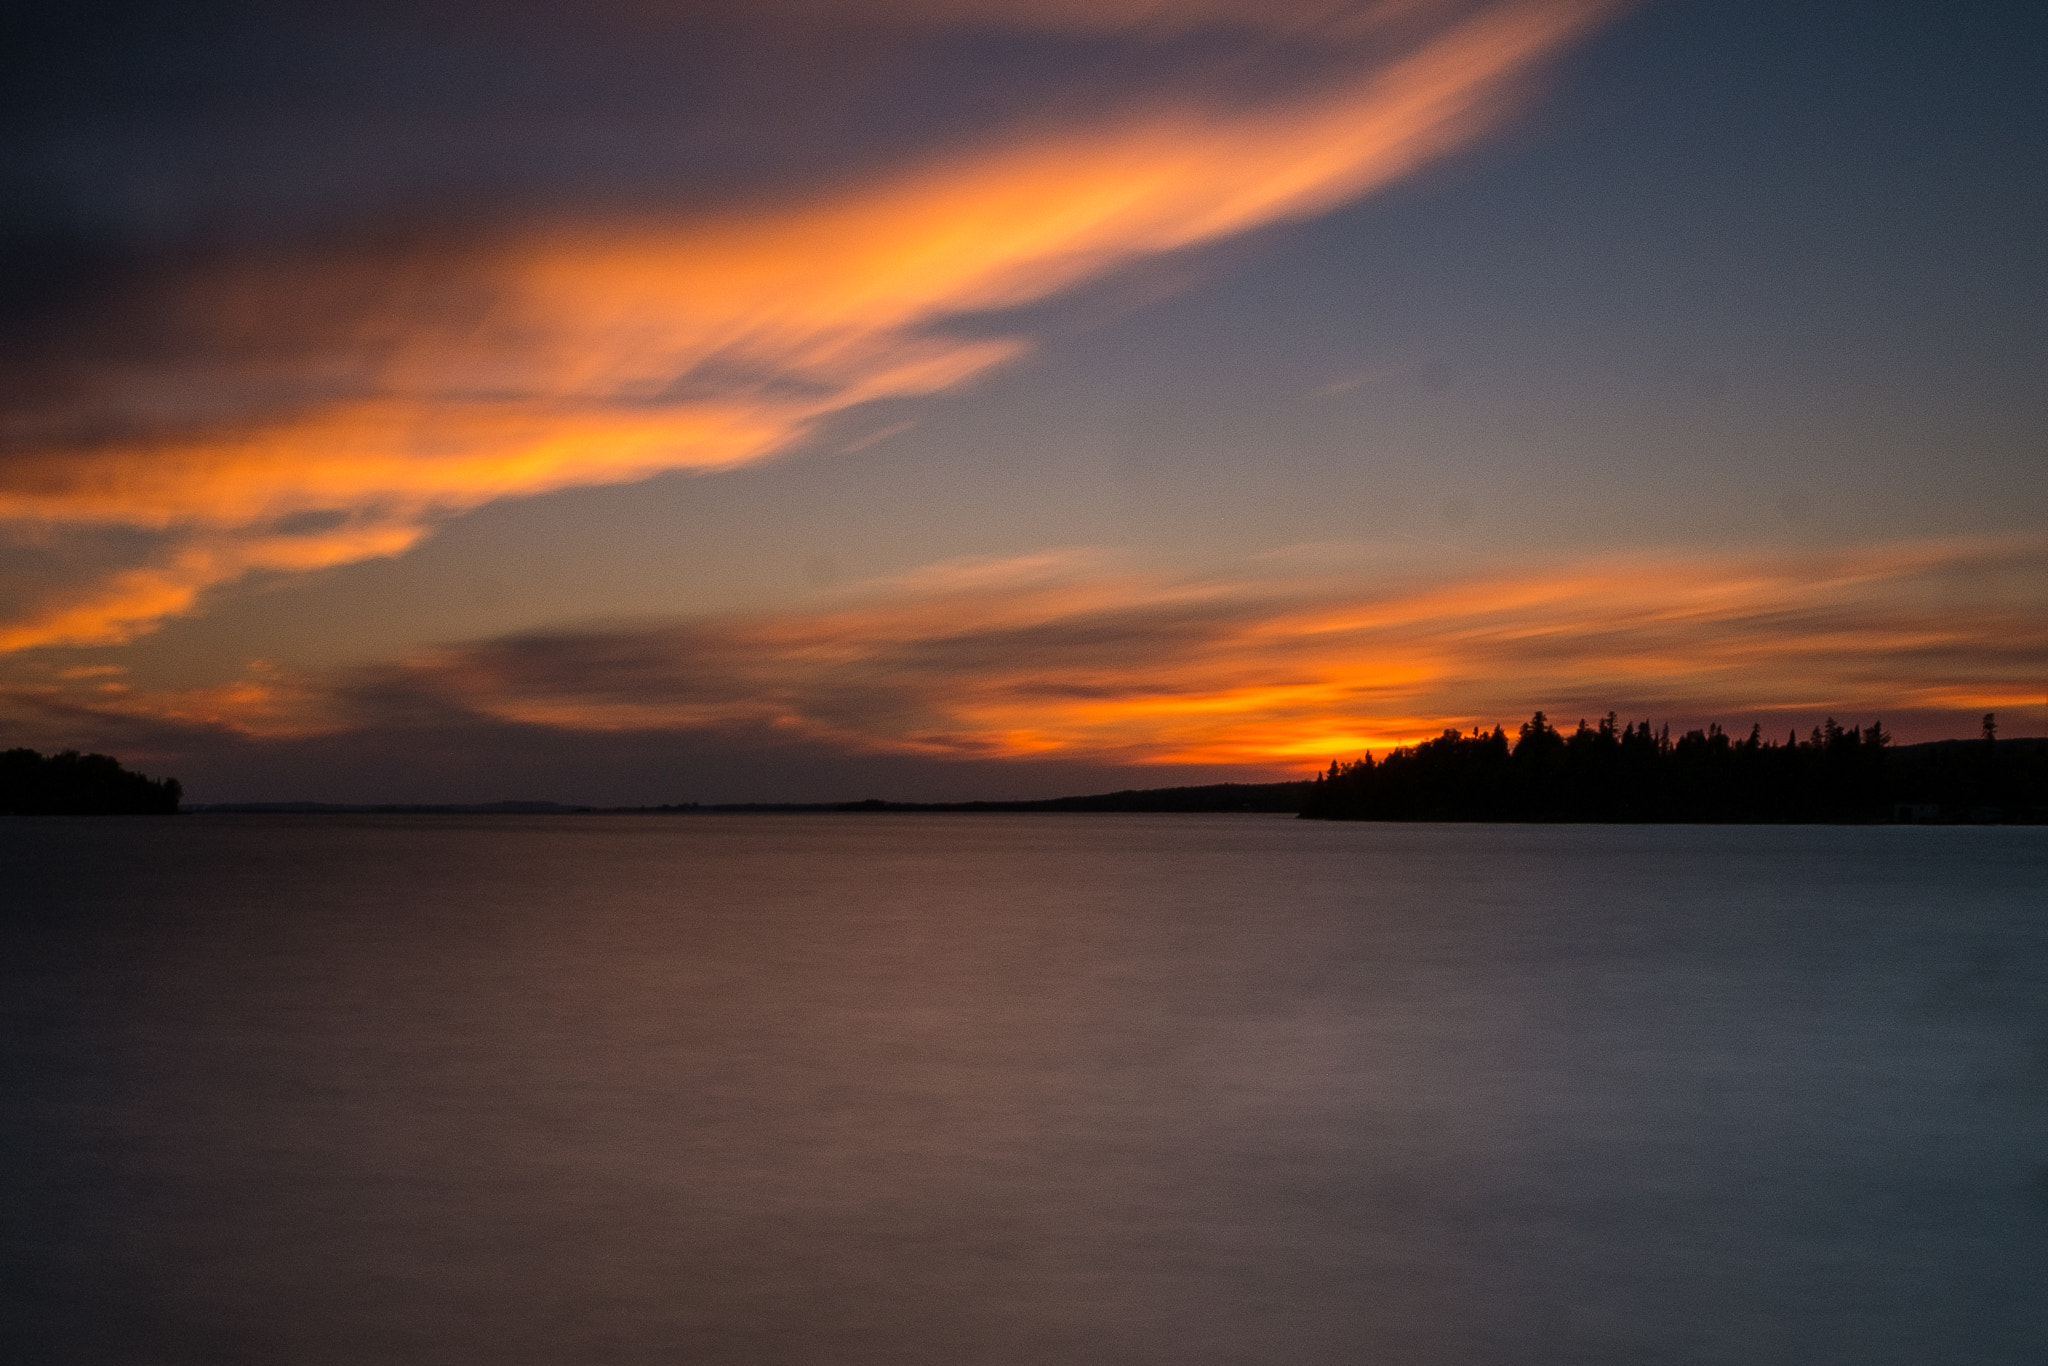 Fujifilm X-Pro1 sample photo. Dramatic sunset over lake superior photography